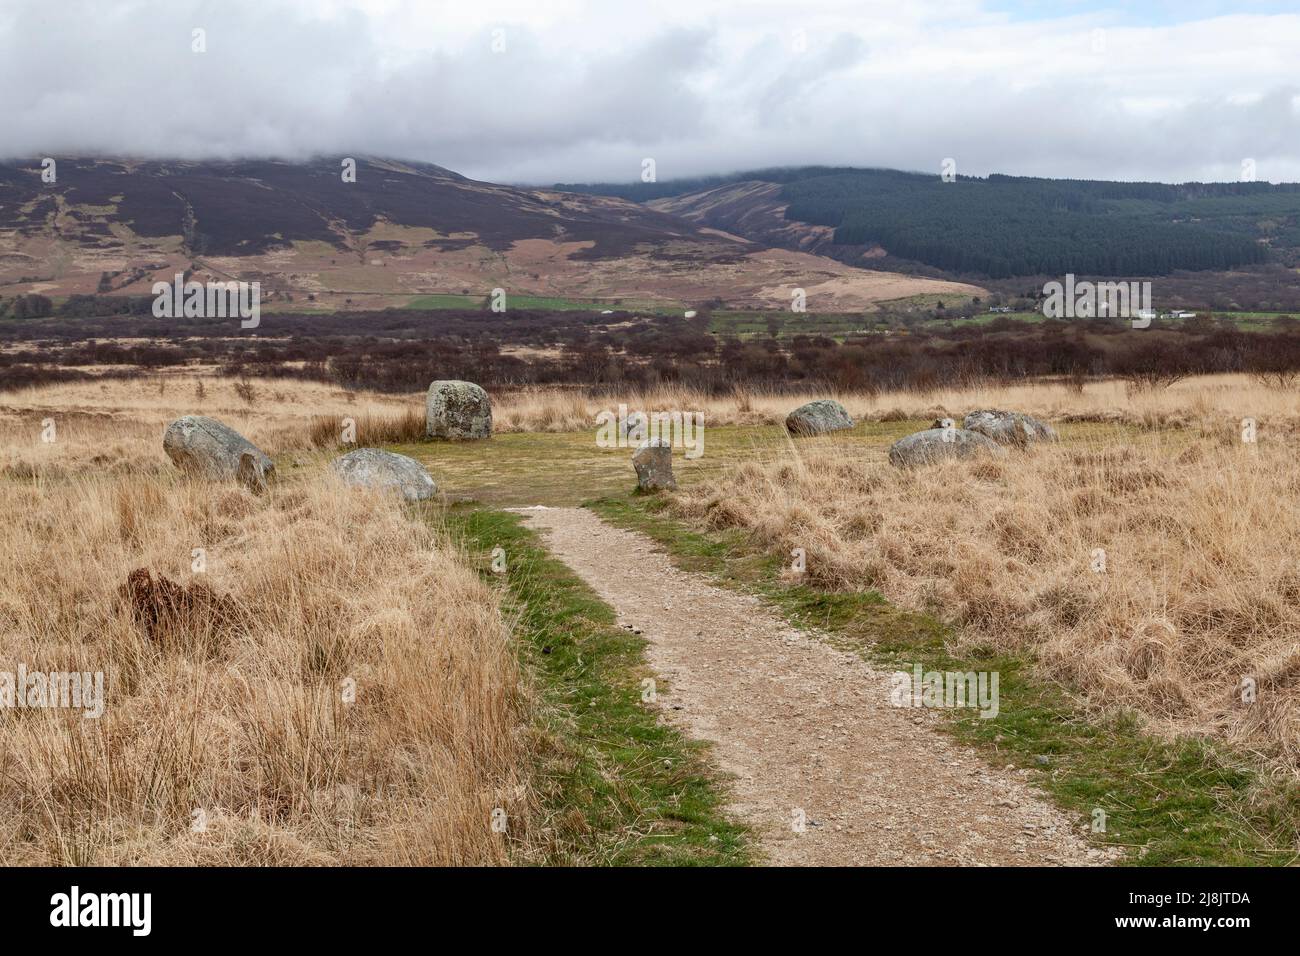 Machrie Moor Stones debout et cercles de pierre, île d'Arran, Écosse - cru à ce jour à la fin du néolithique au début de l'âge de bronze Banque D'Images